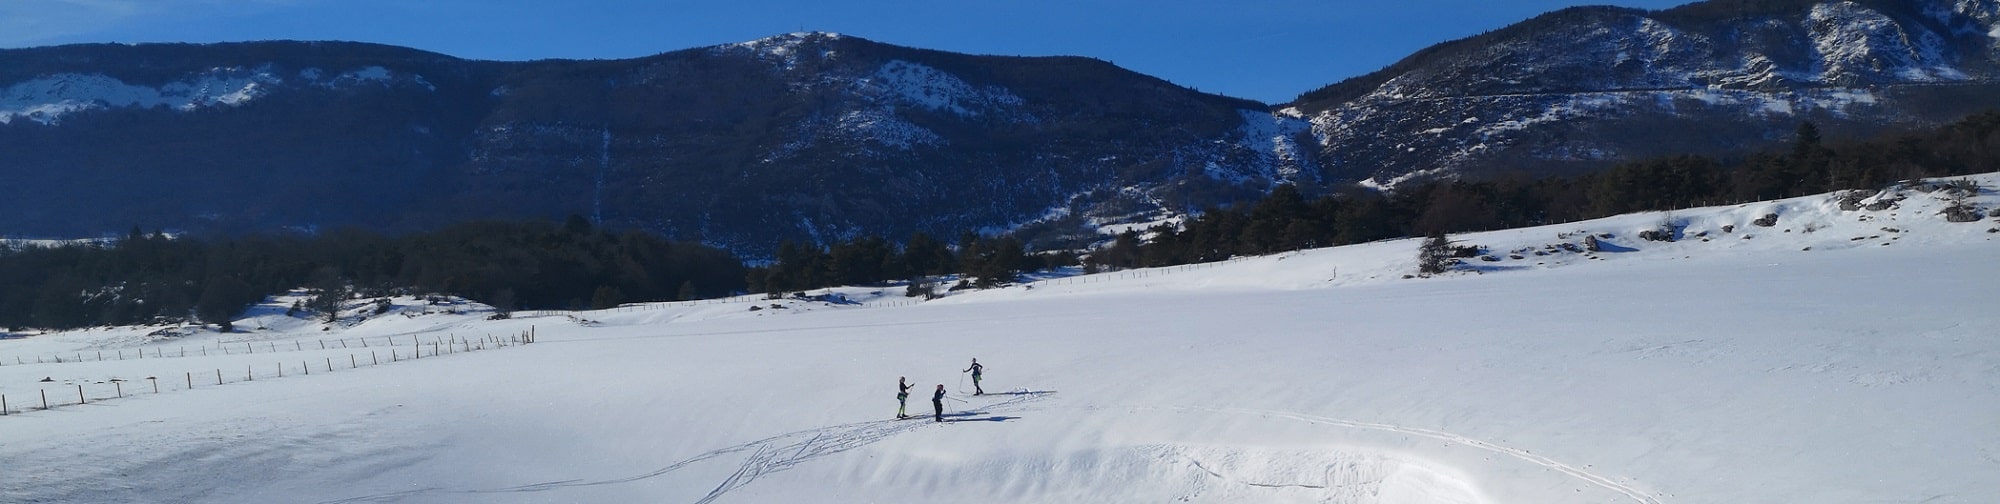 skieurs-plaine-vassieux